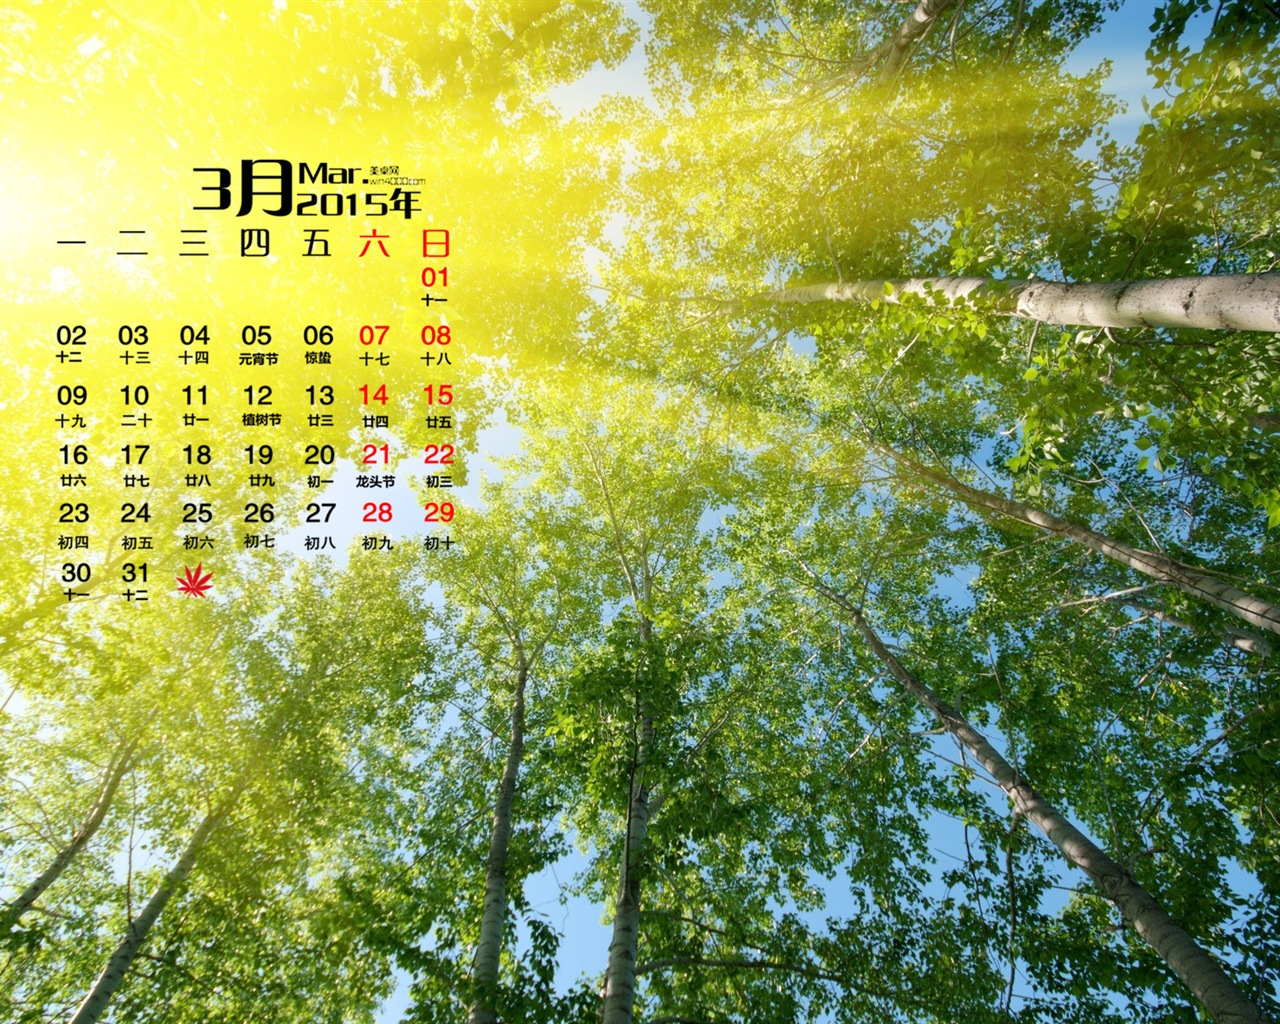 March 2015 Calendar wallpaper (1) #20 - 1280x1024